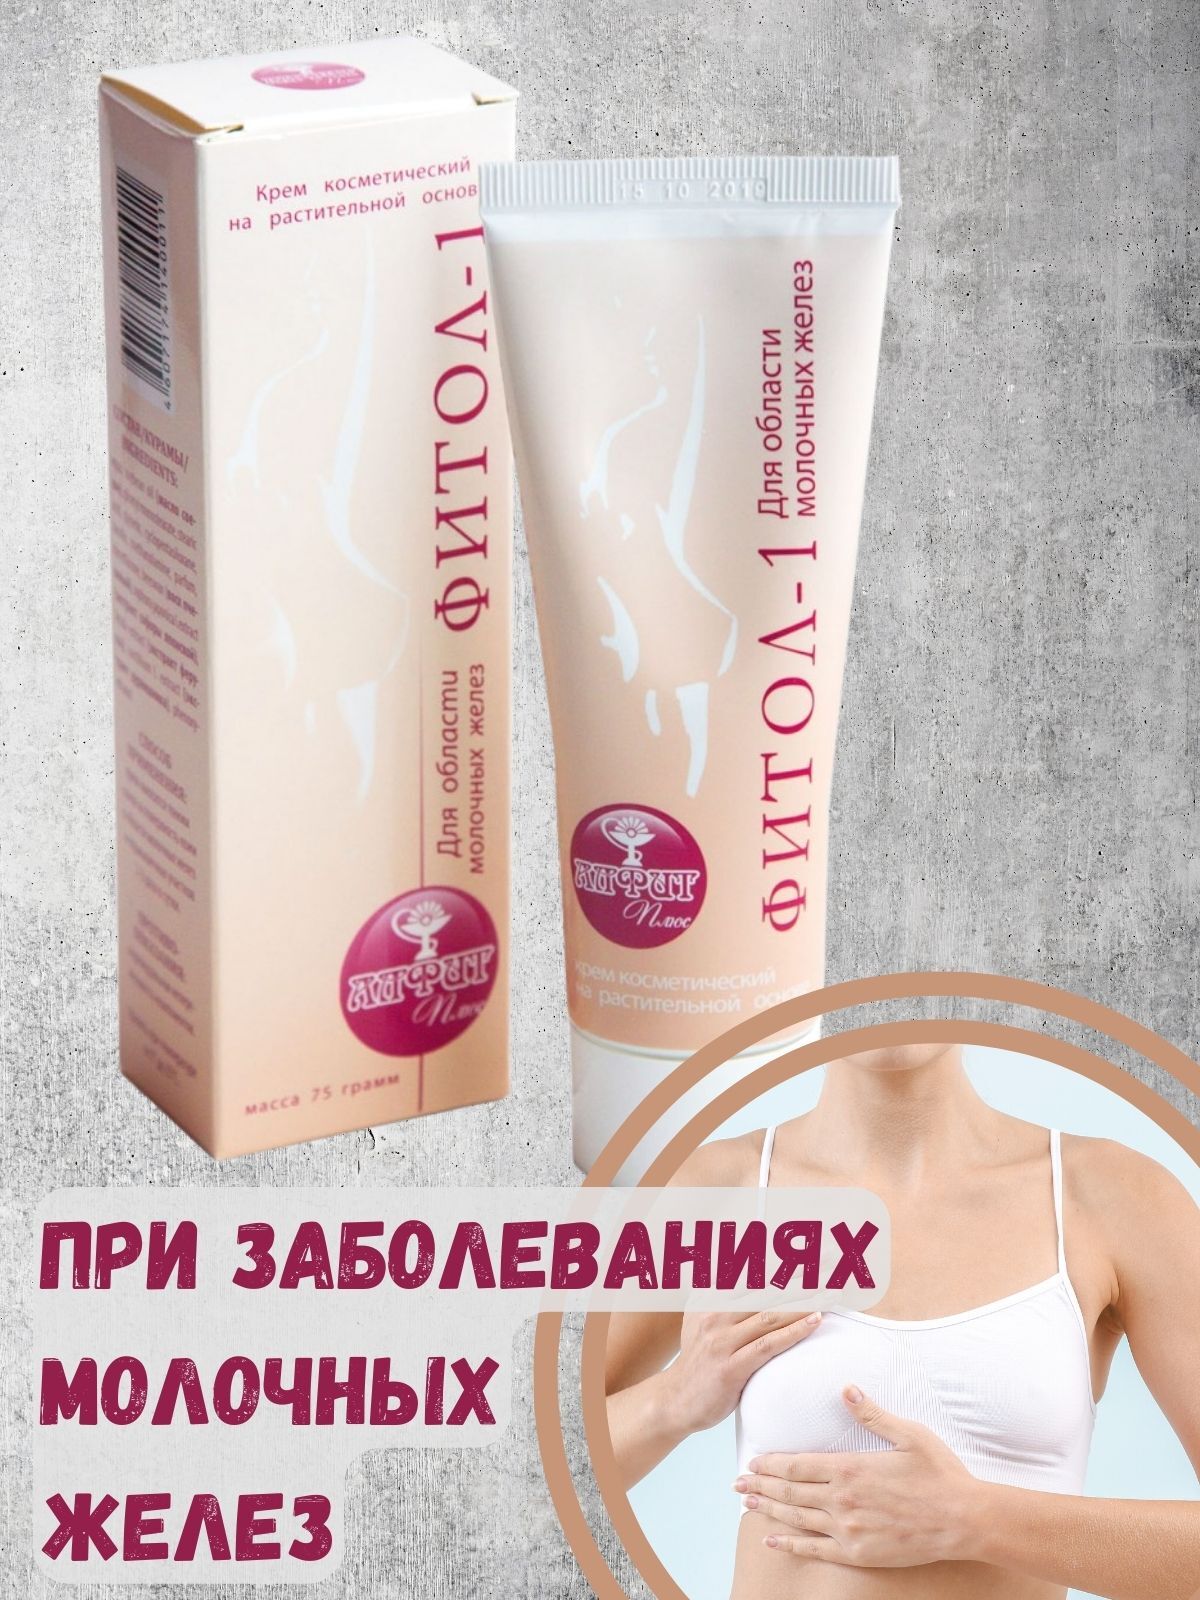 Фитол-1 крем мастопатийный 75 г для области молочных желез Алфит Плюс ООО 15747